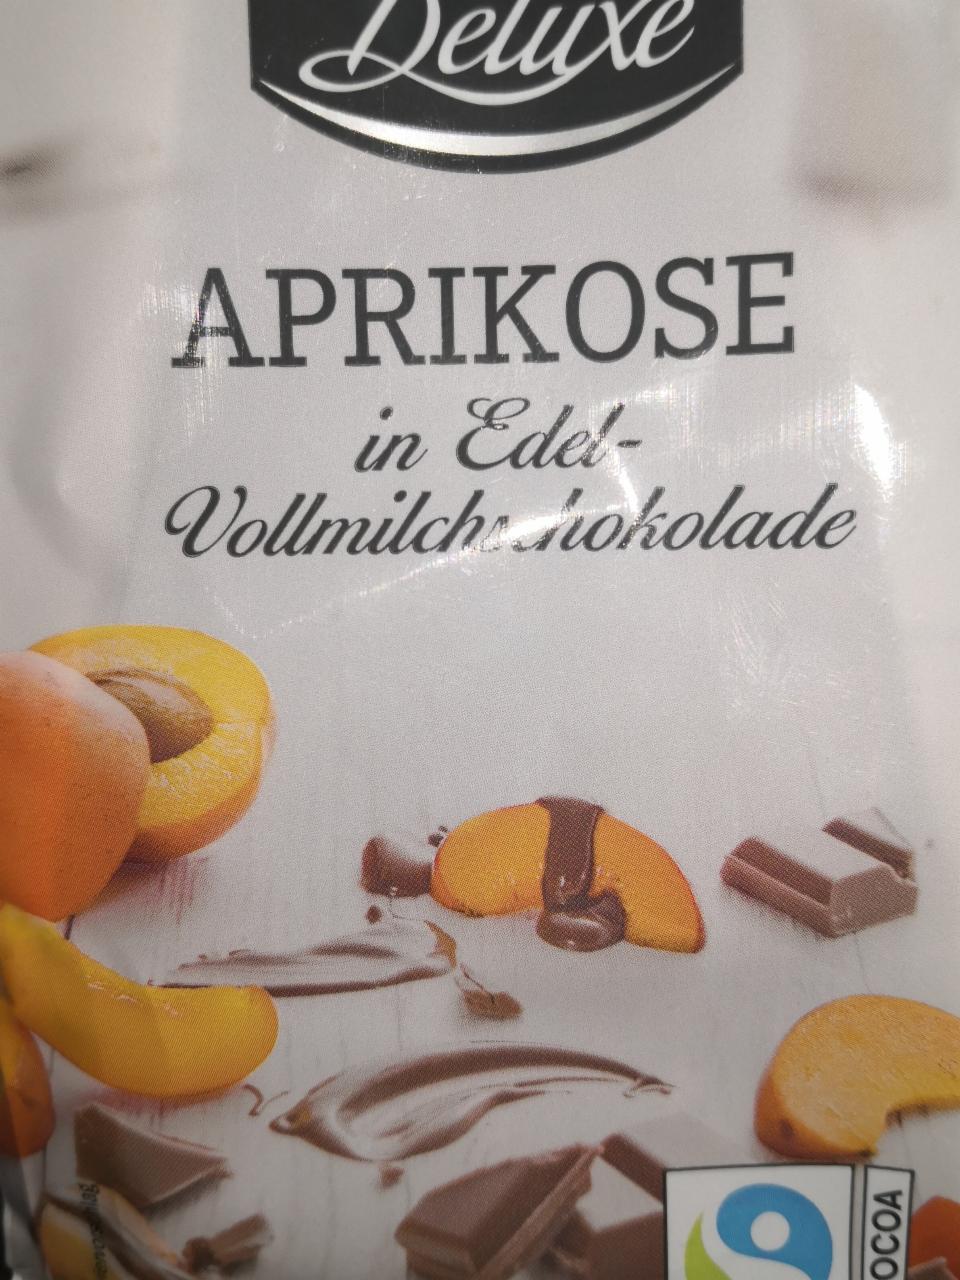 Фото - Курага в шоколаде Aprikose in Edel-Vollmilchschokolade Deluxe